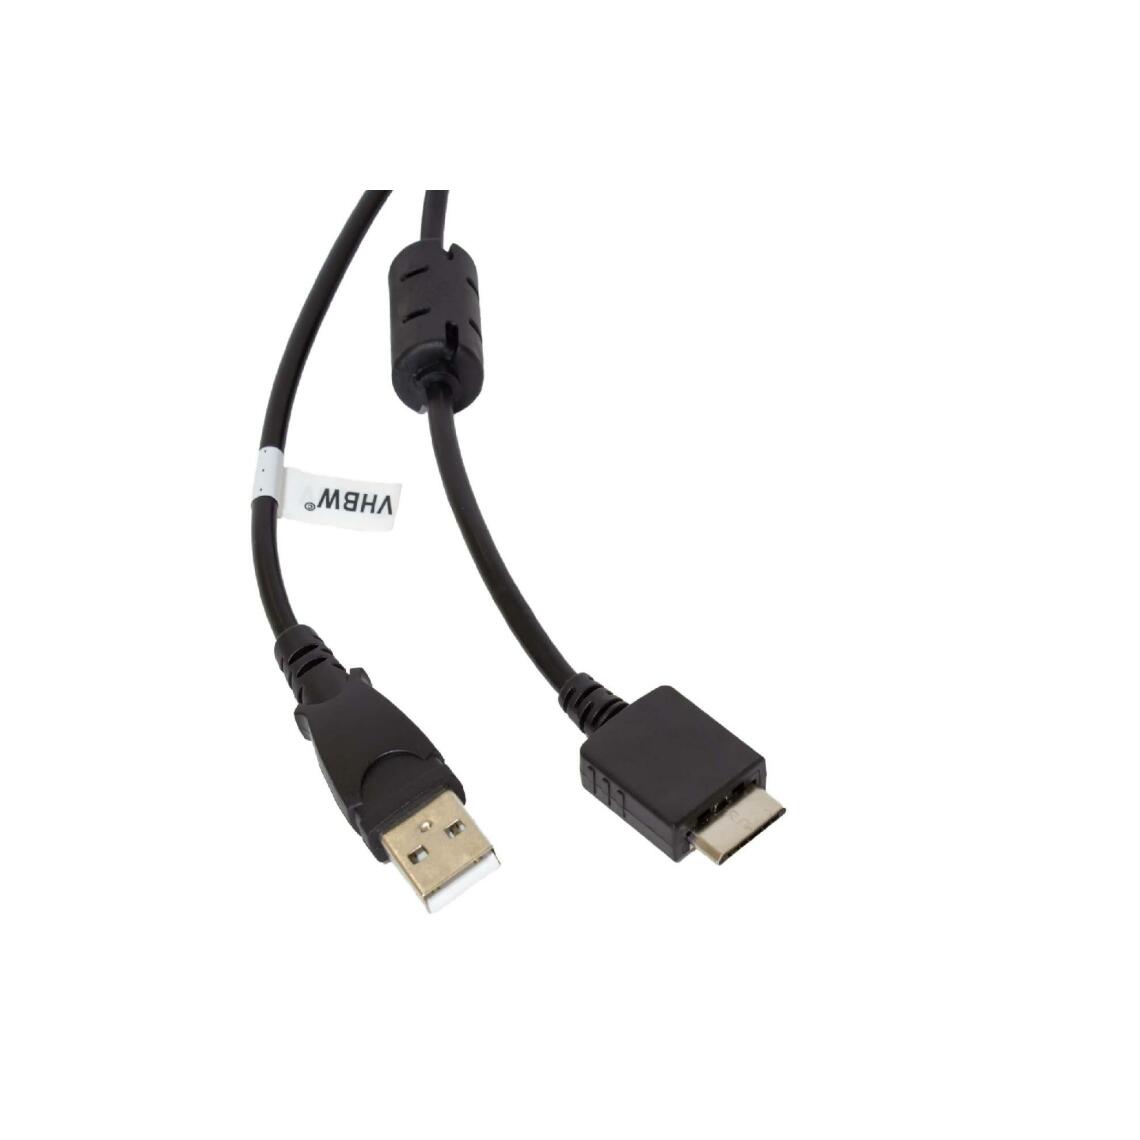 Vhbw - vhbw câble de données USB (type A sur lecteur MP3) câble de chargement compatible avec Sony Walkman NWZ-S615FBLK lecteur MP3 - noir, 150cm - Alimentation modulaire